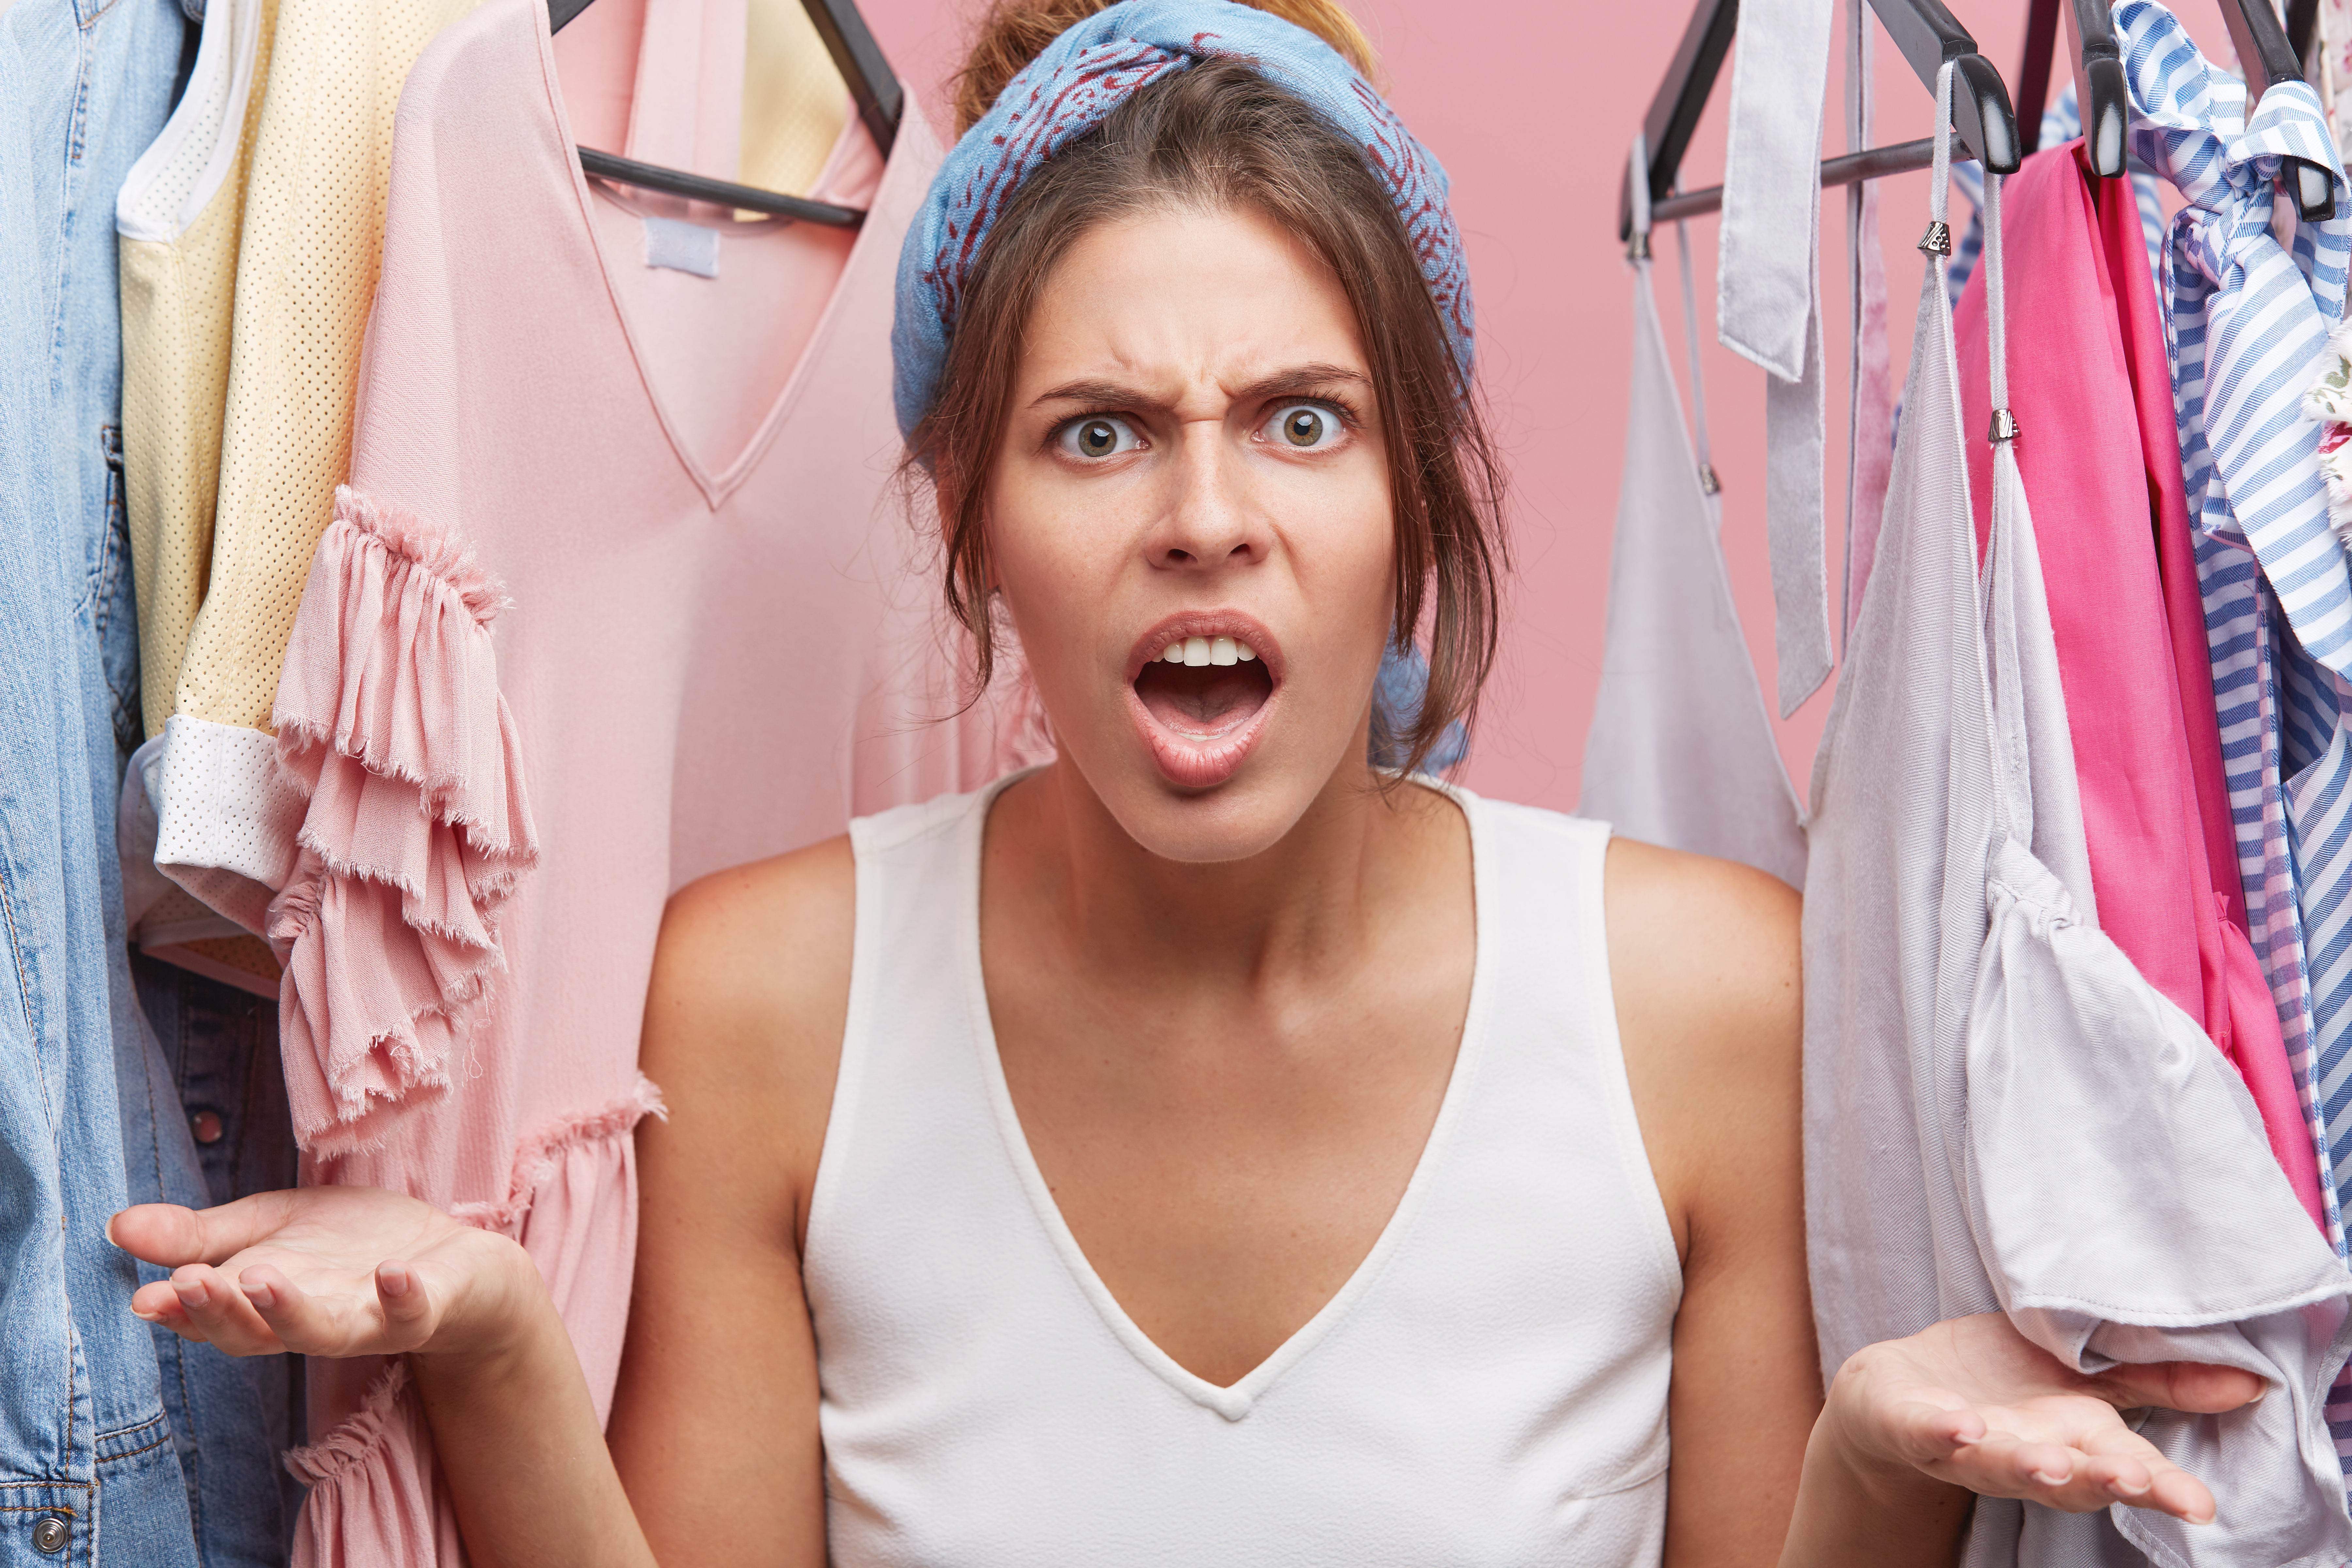 Frau wütend in ihrem Kleiderschrank | Quelle: wayhomestudio auf Freepik